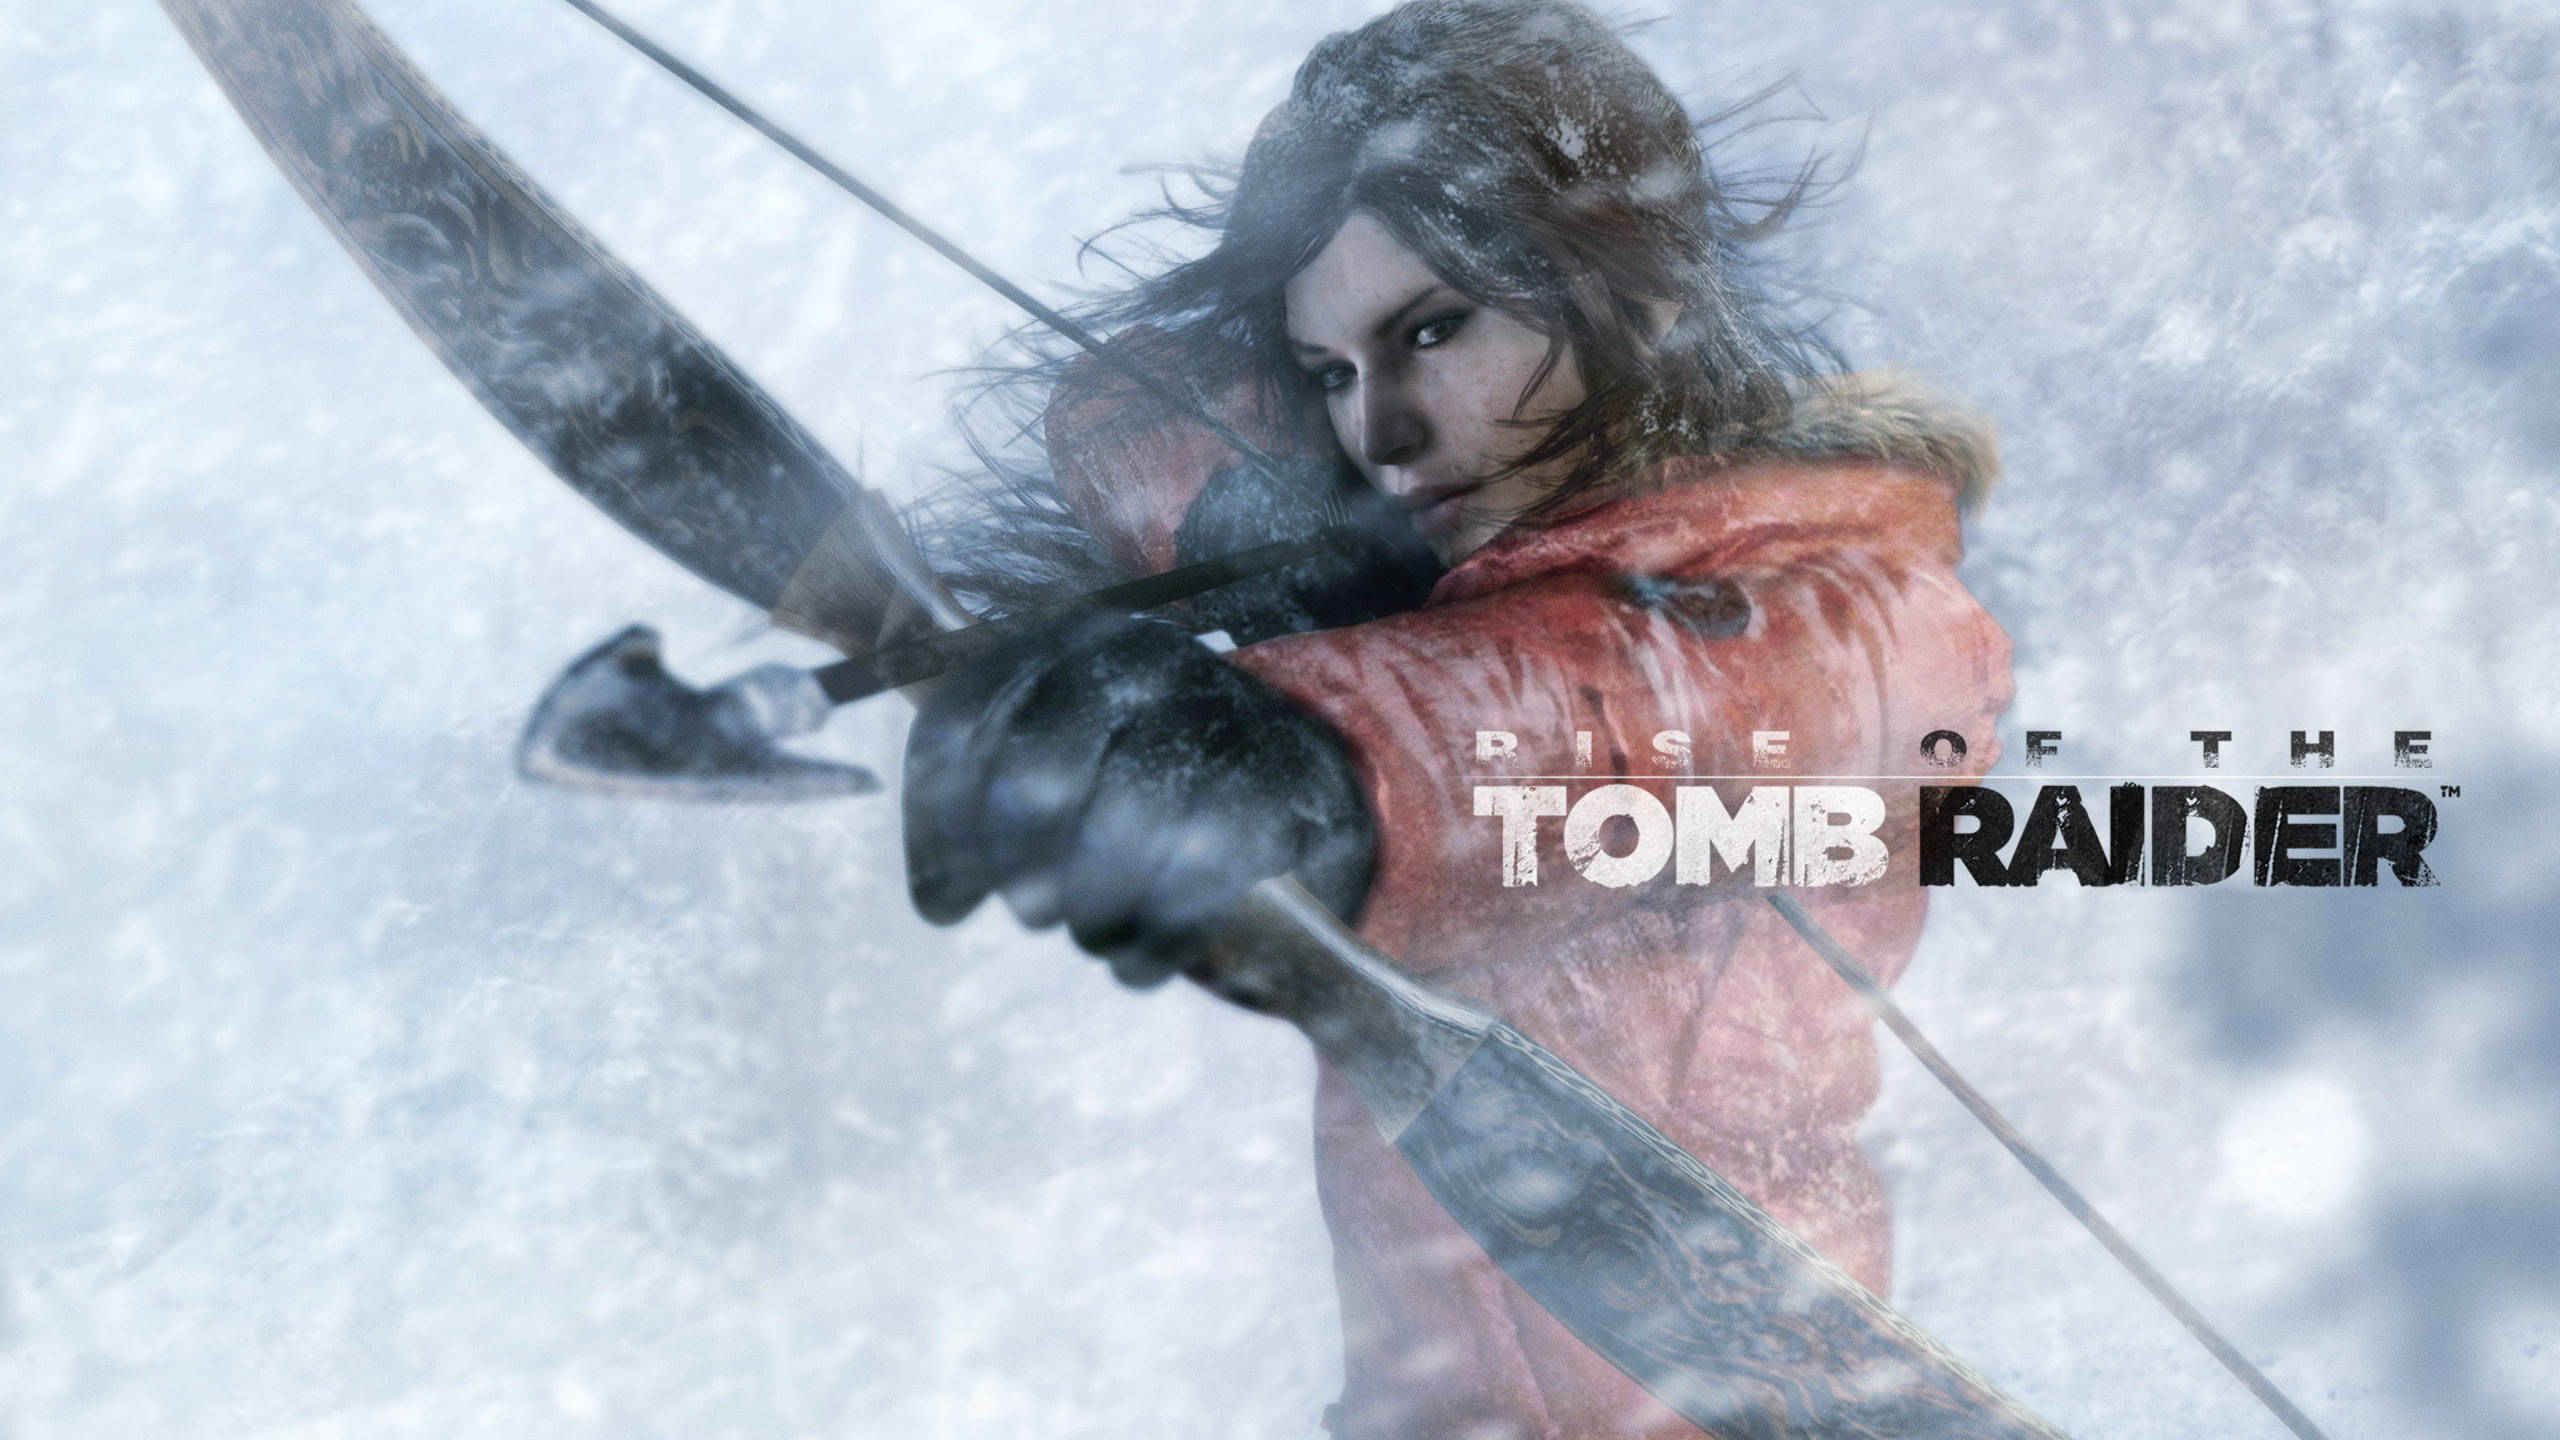 2560 X 1440 Tomb Raider Fearless Lara Croft